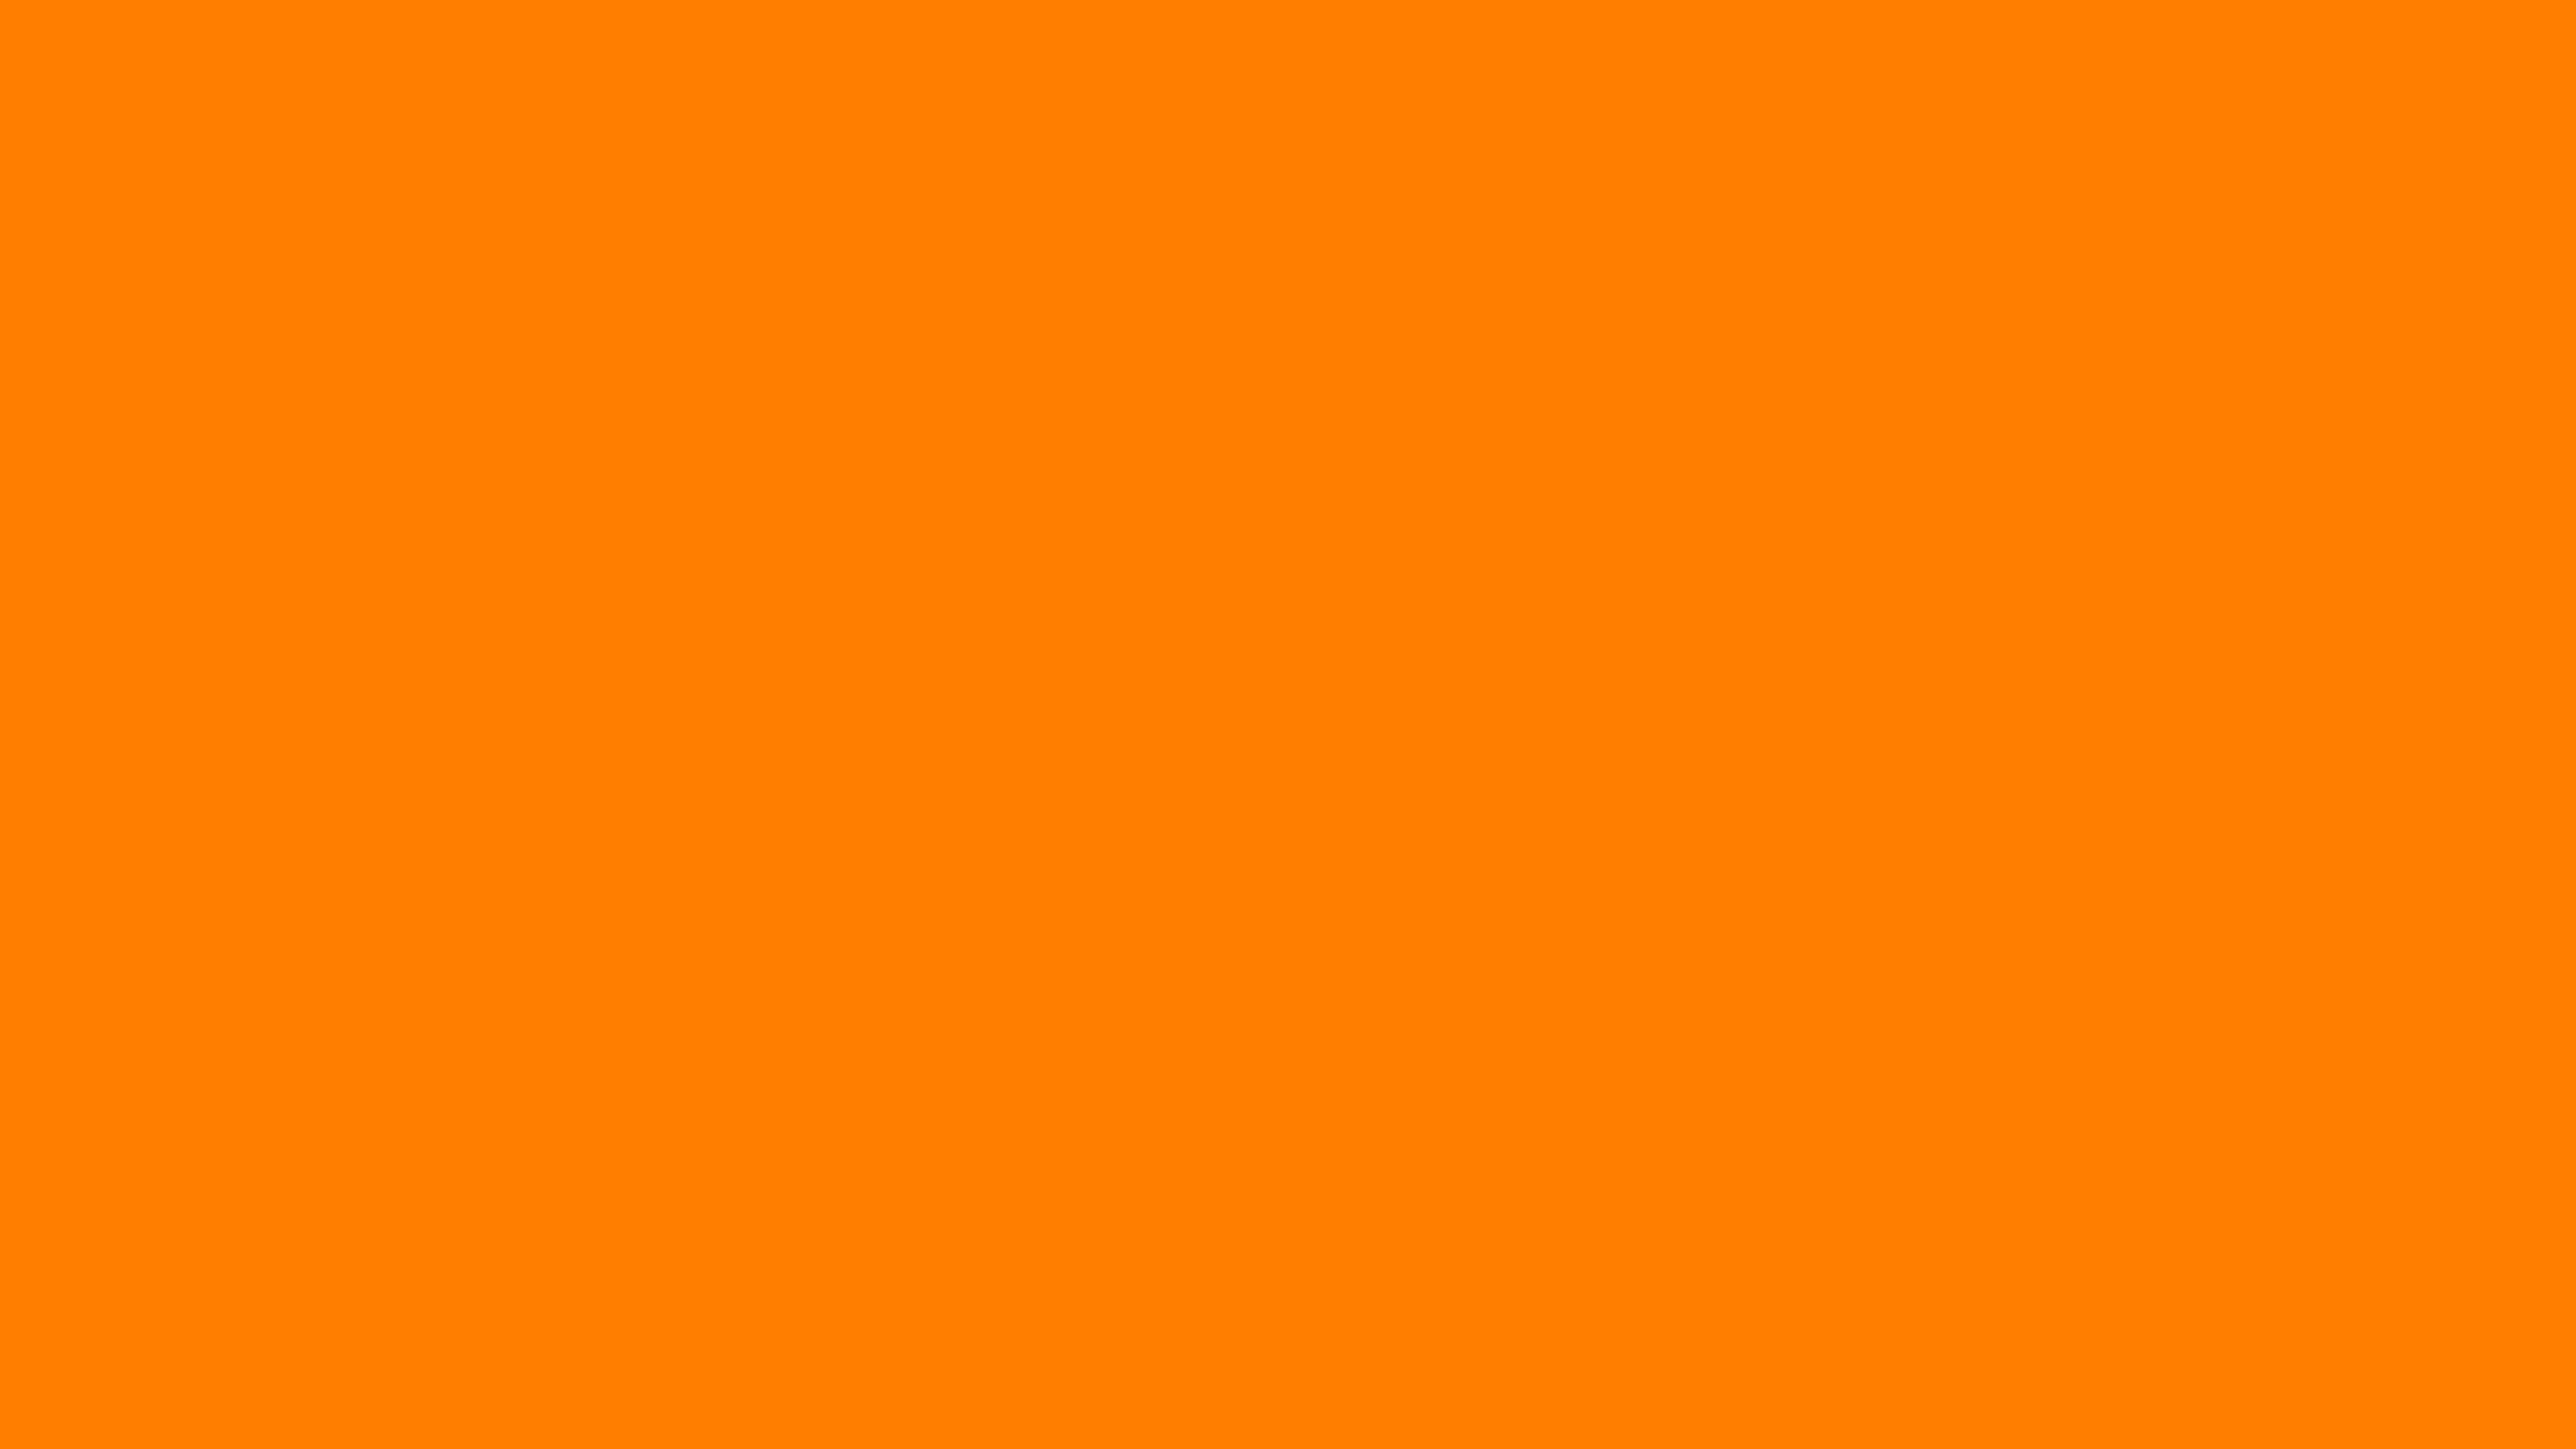 3840x2160 Amber Orange Solid Color Background